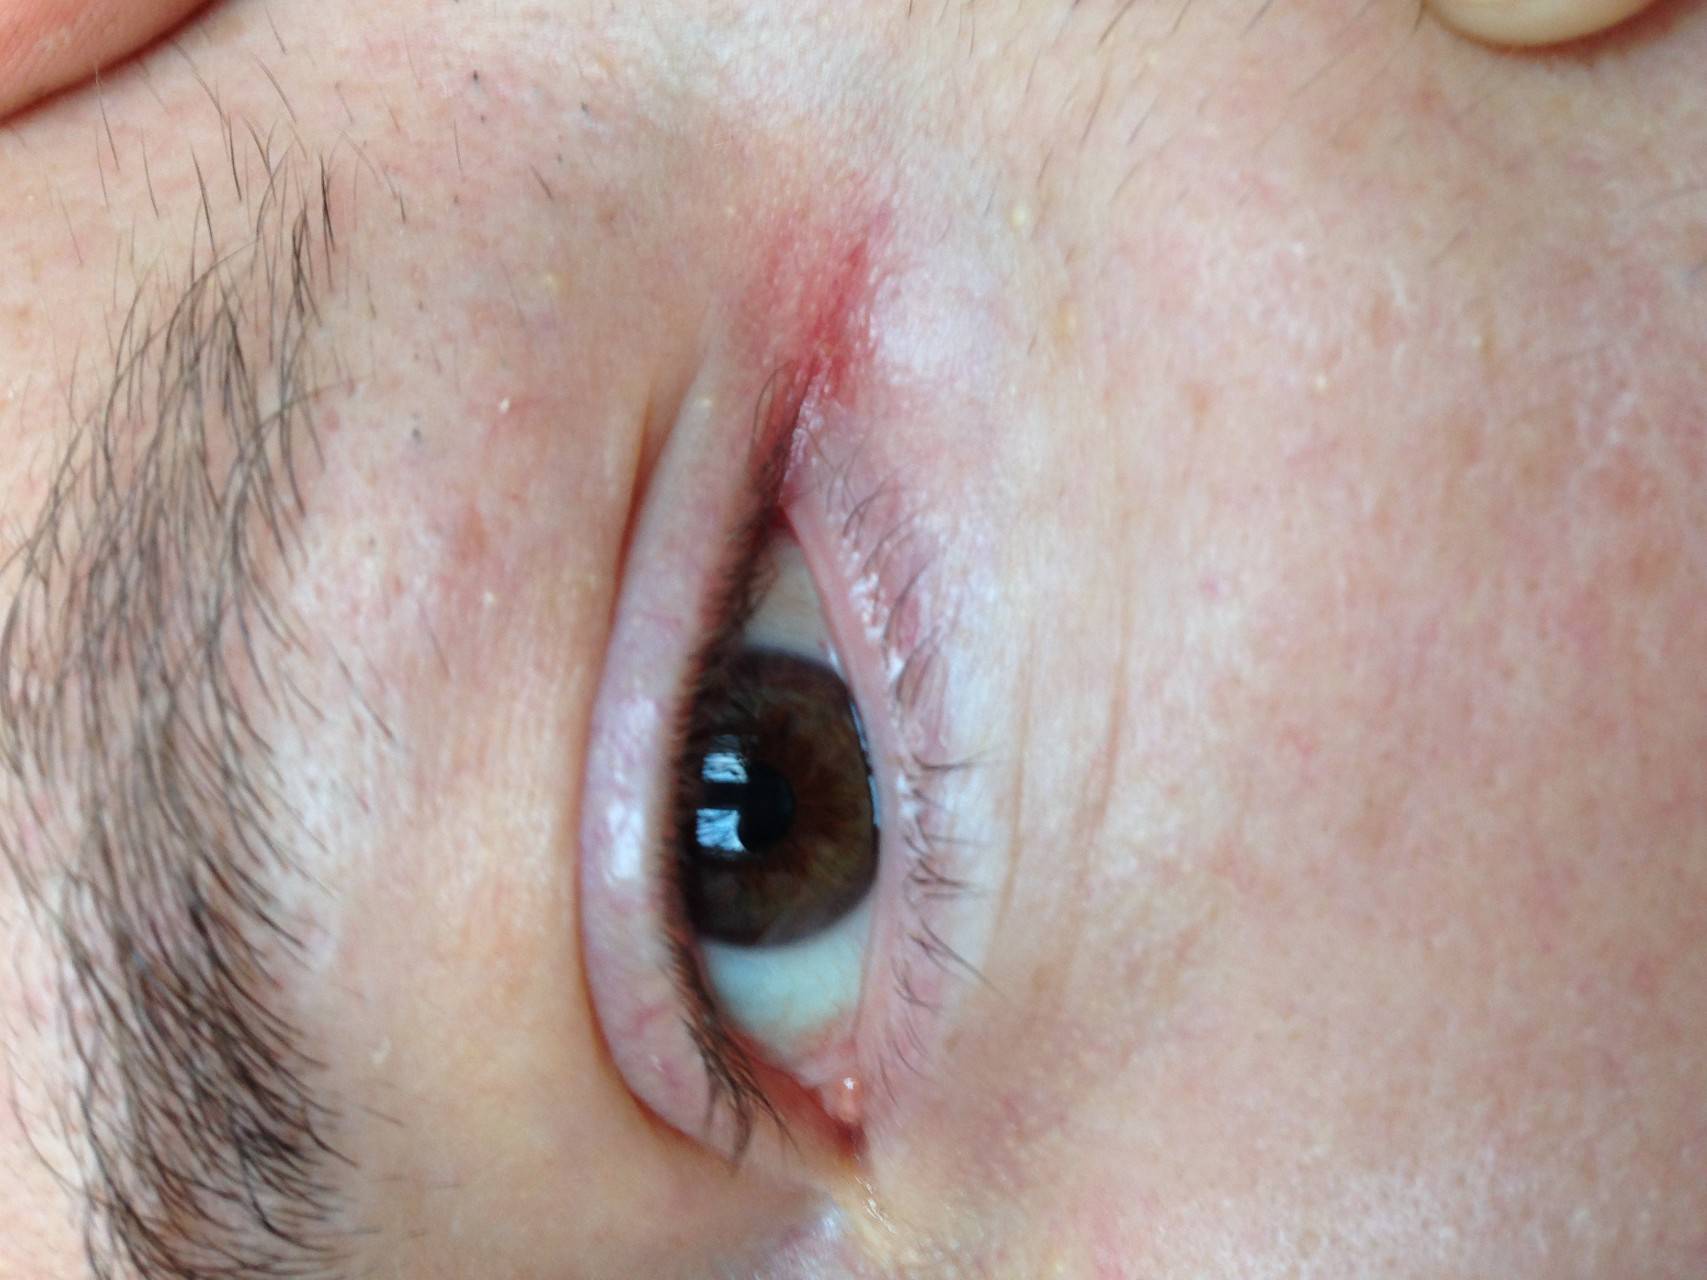 Что делать взрослым, если при аллергии становятся красными глаза?